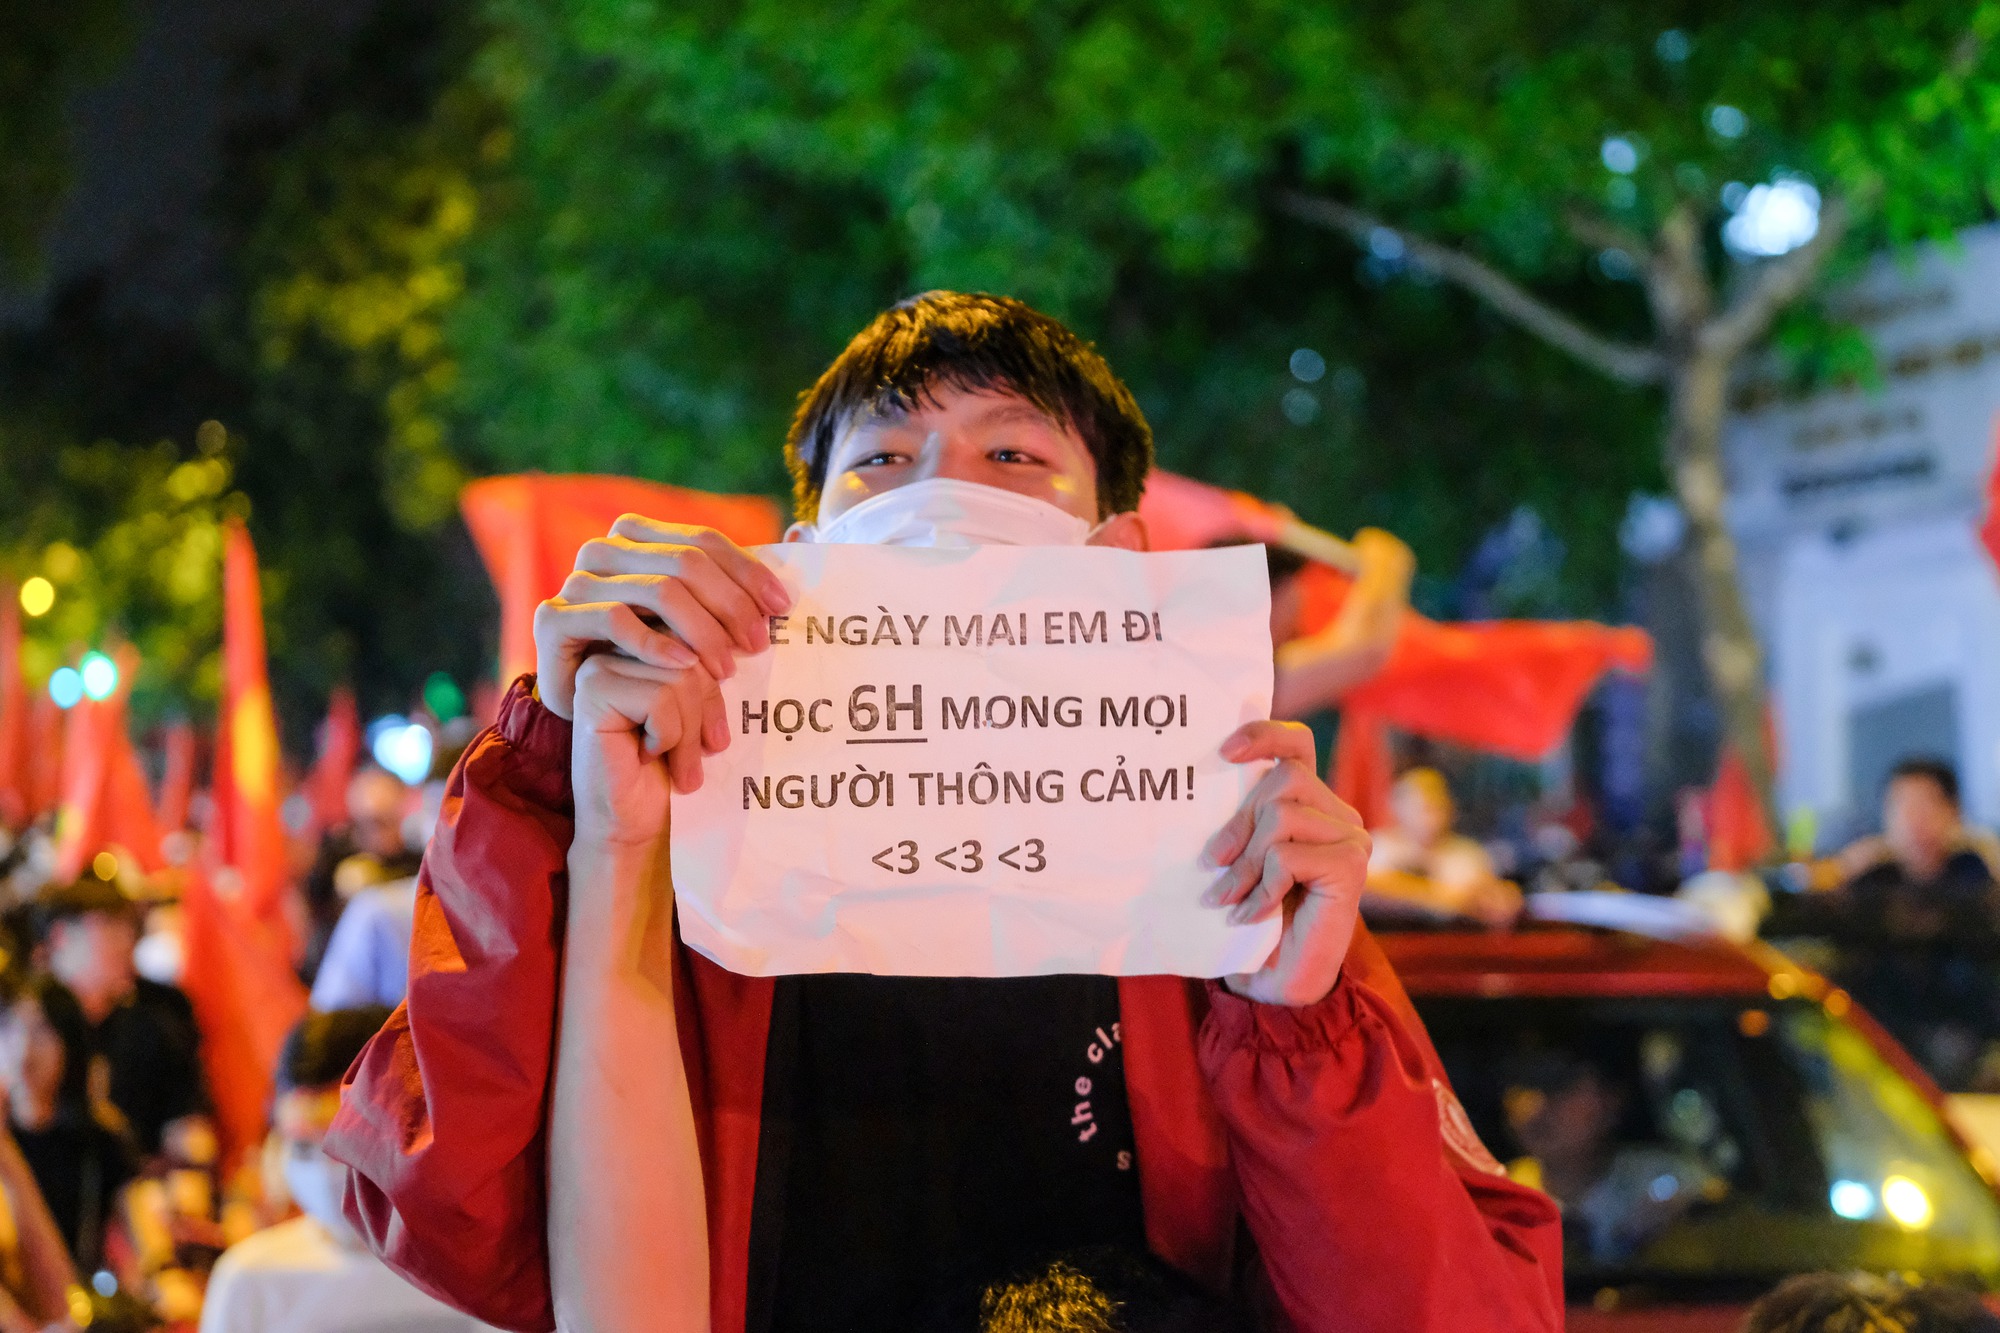 Đêm U23 Việt Nam giành HCV SEA Games trả món nợ với người Thái, người dân cả nước xuống đường nhuộm đỏ mọi tuyến phố - Ảnh 16.